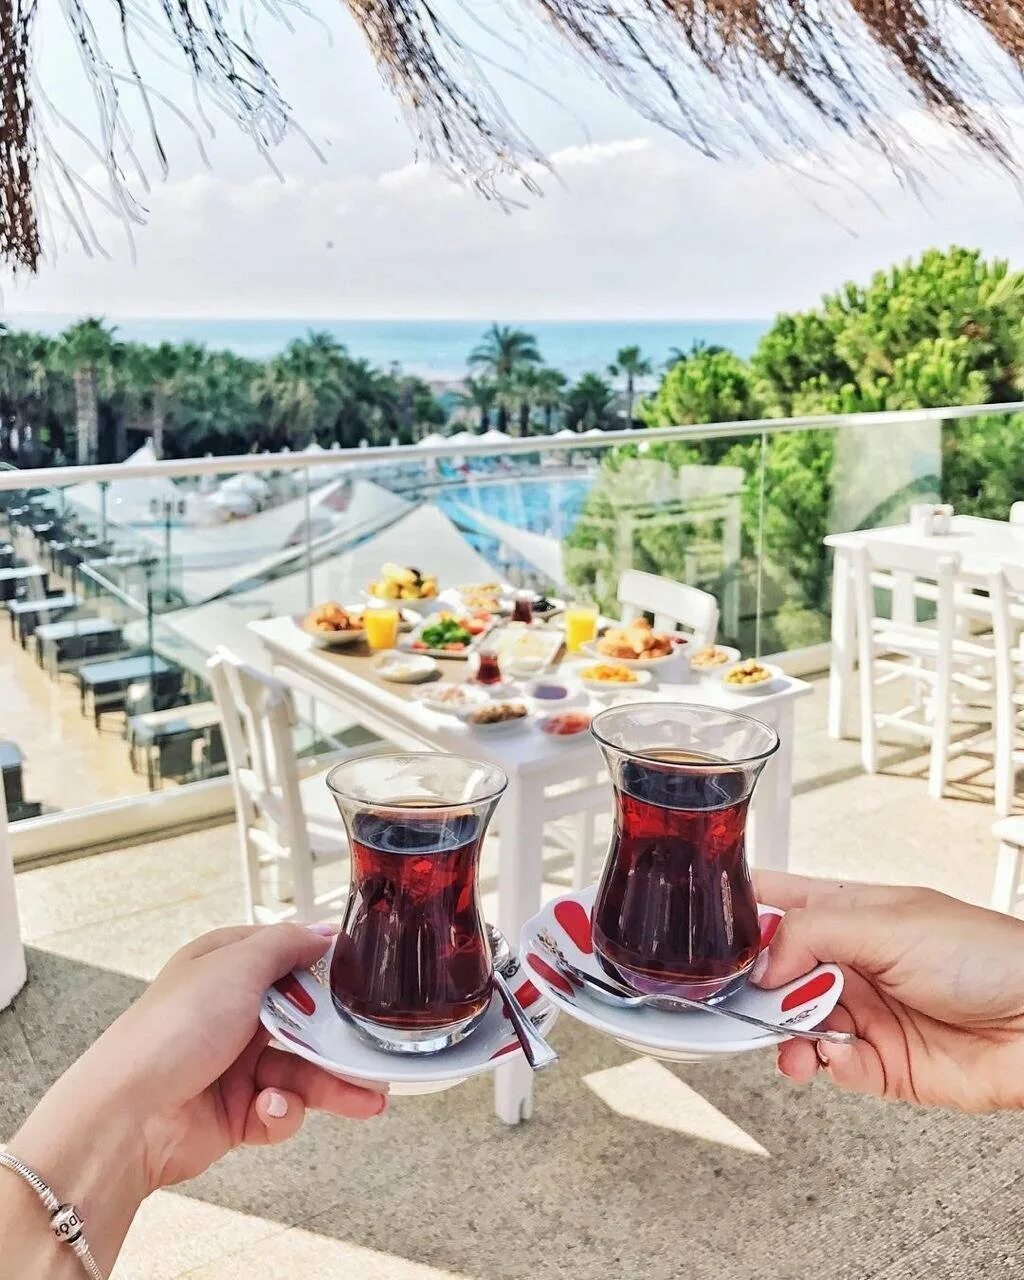 Инстаграмм отеля. Отпуск в Турции. Турция Инстаграм. Турецкий чай в отеле. Турция для инстаграмма.